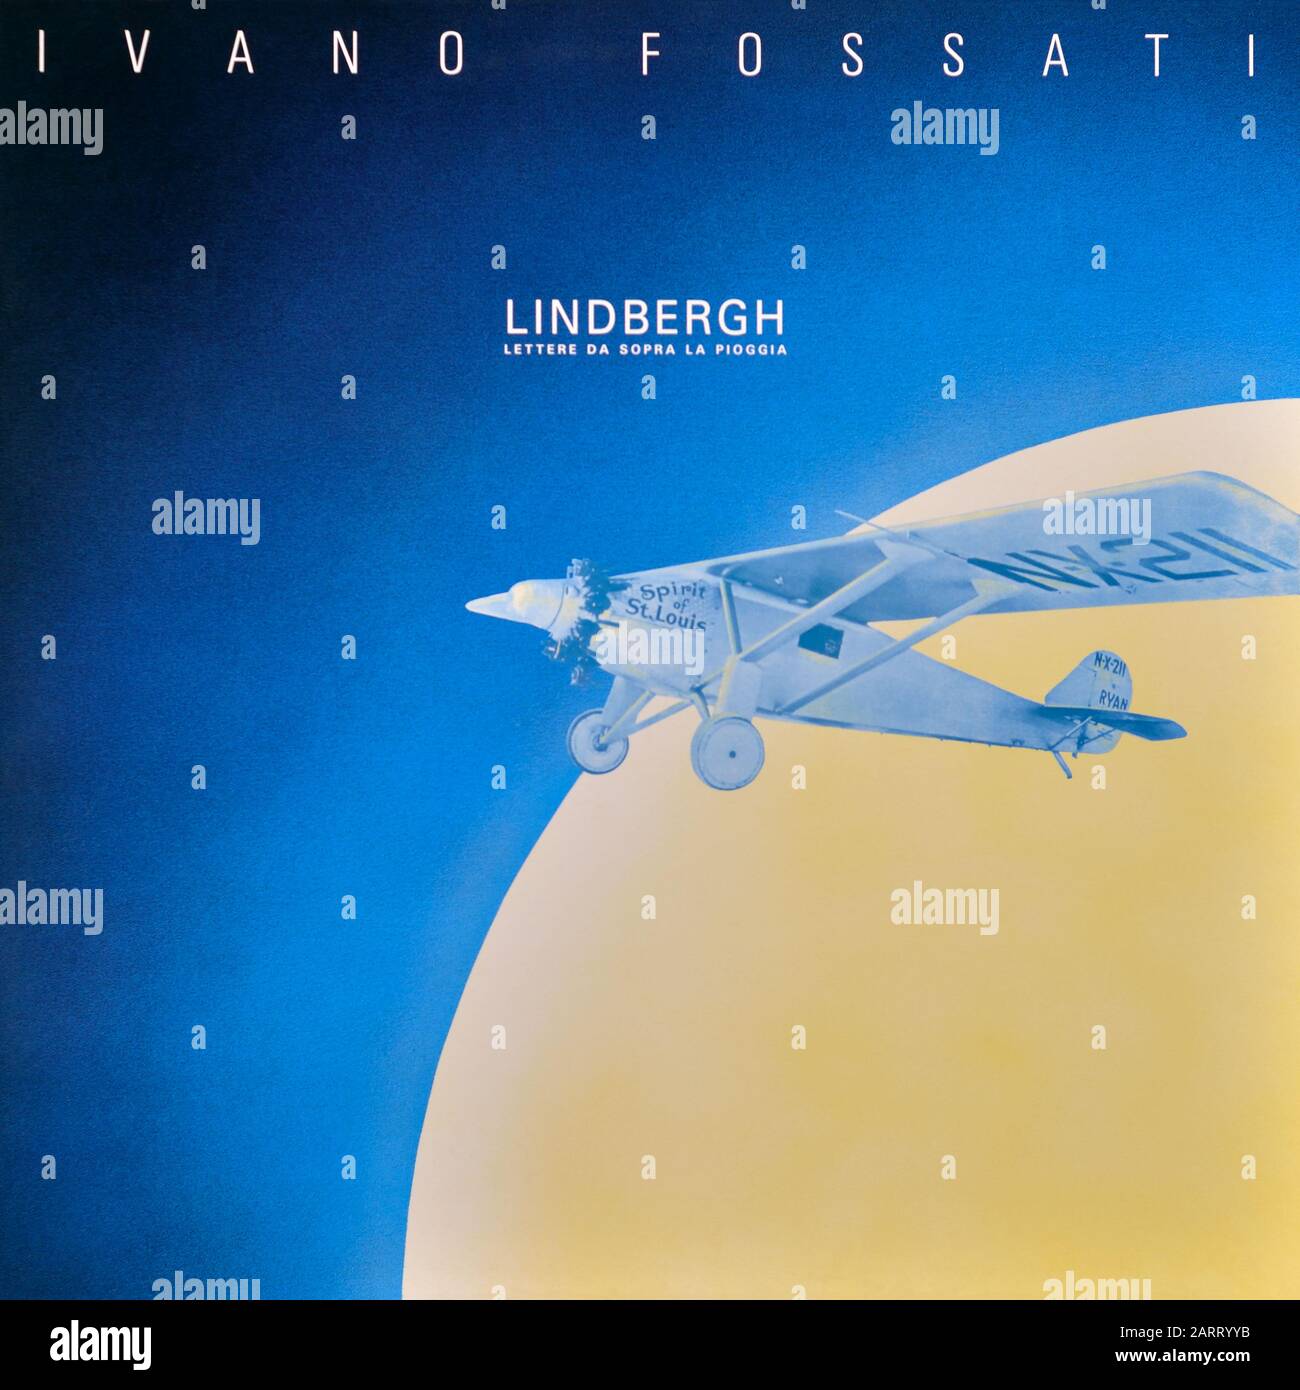 Ivano Fossati - original Vinyl Album Cover - Lindbergh Lettere Da Sopra La Pioggia - 1992 Stockfoto